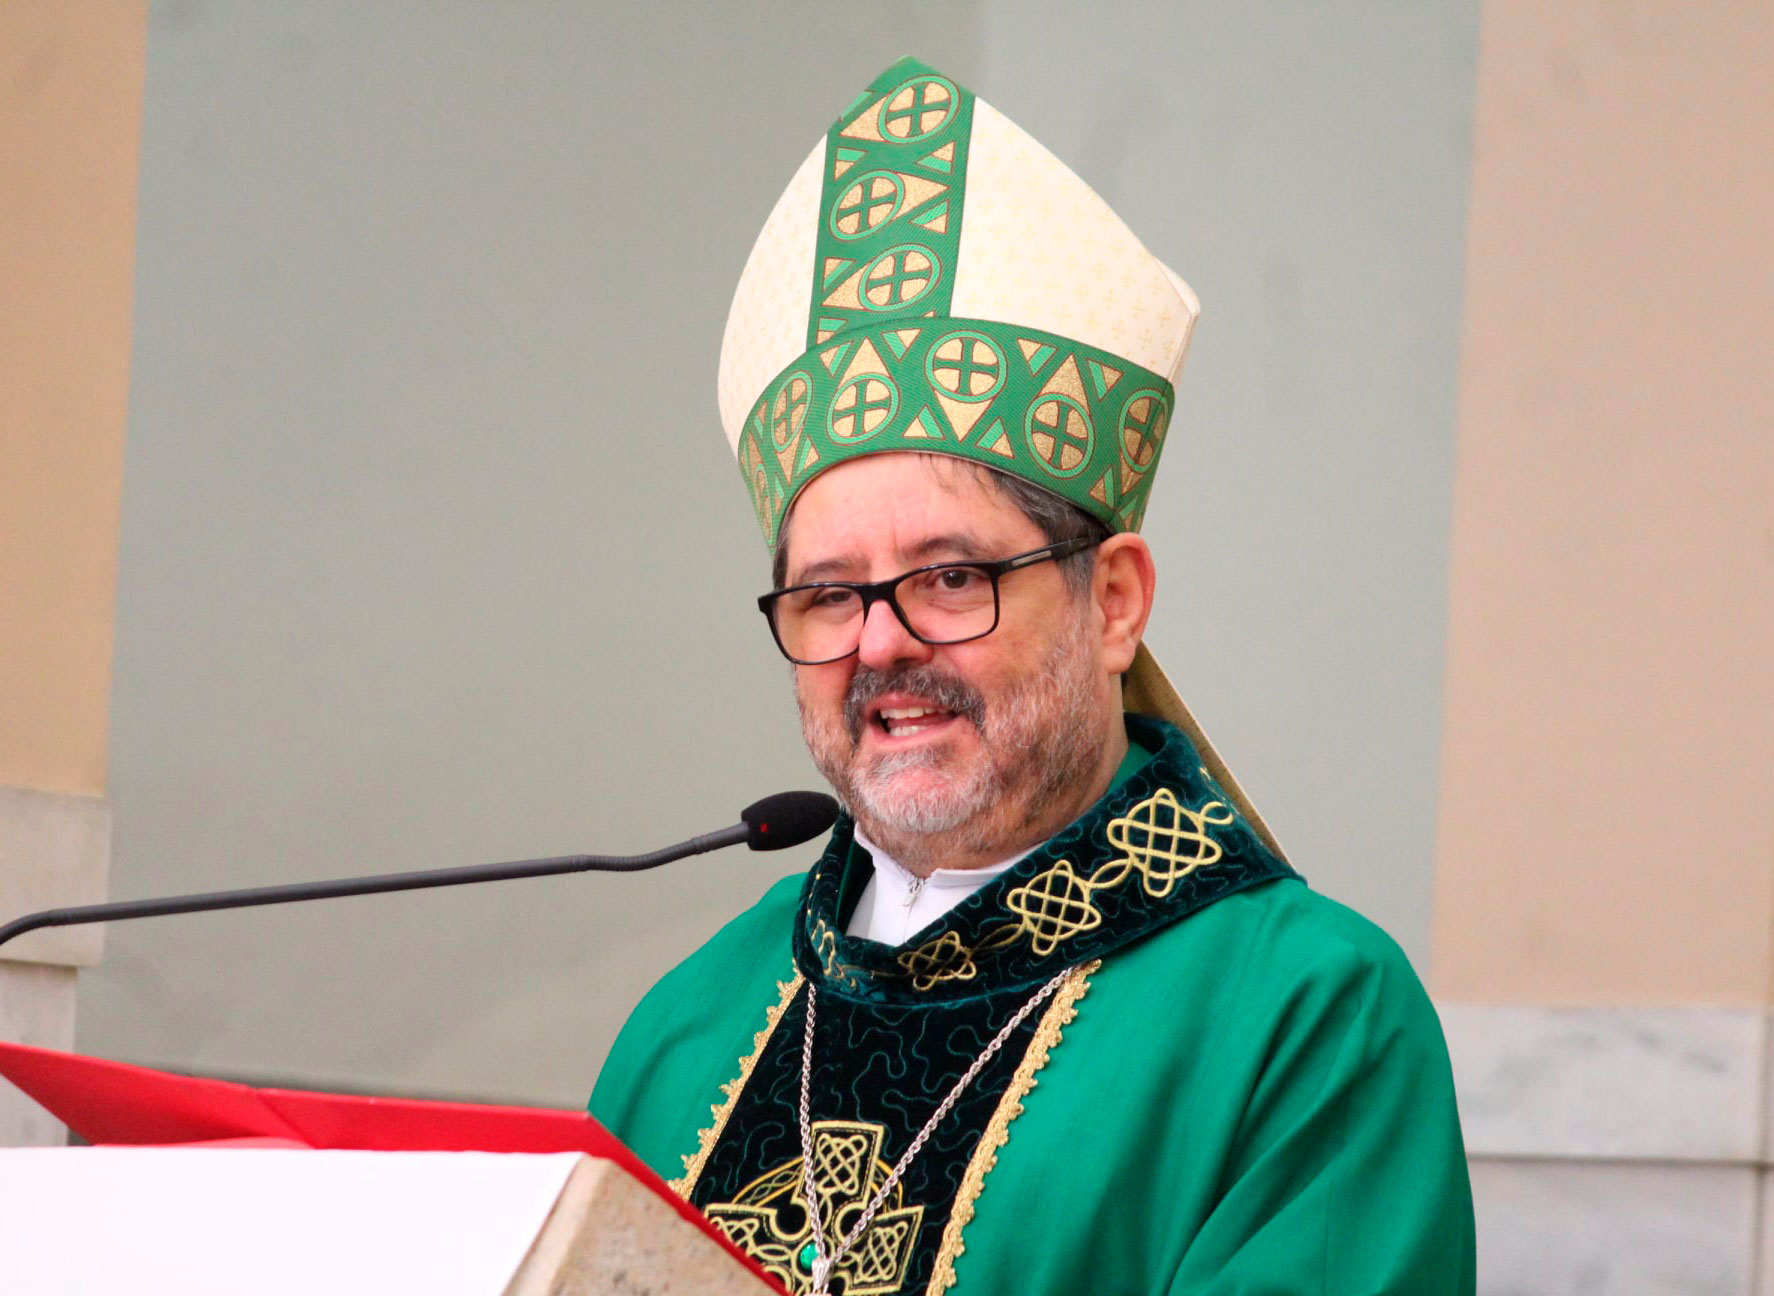 Bispo Dom Luiz Antonio Lopes Ricci